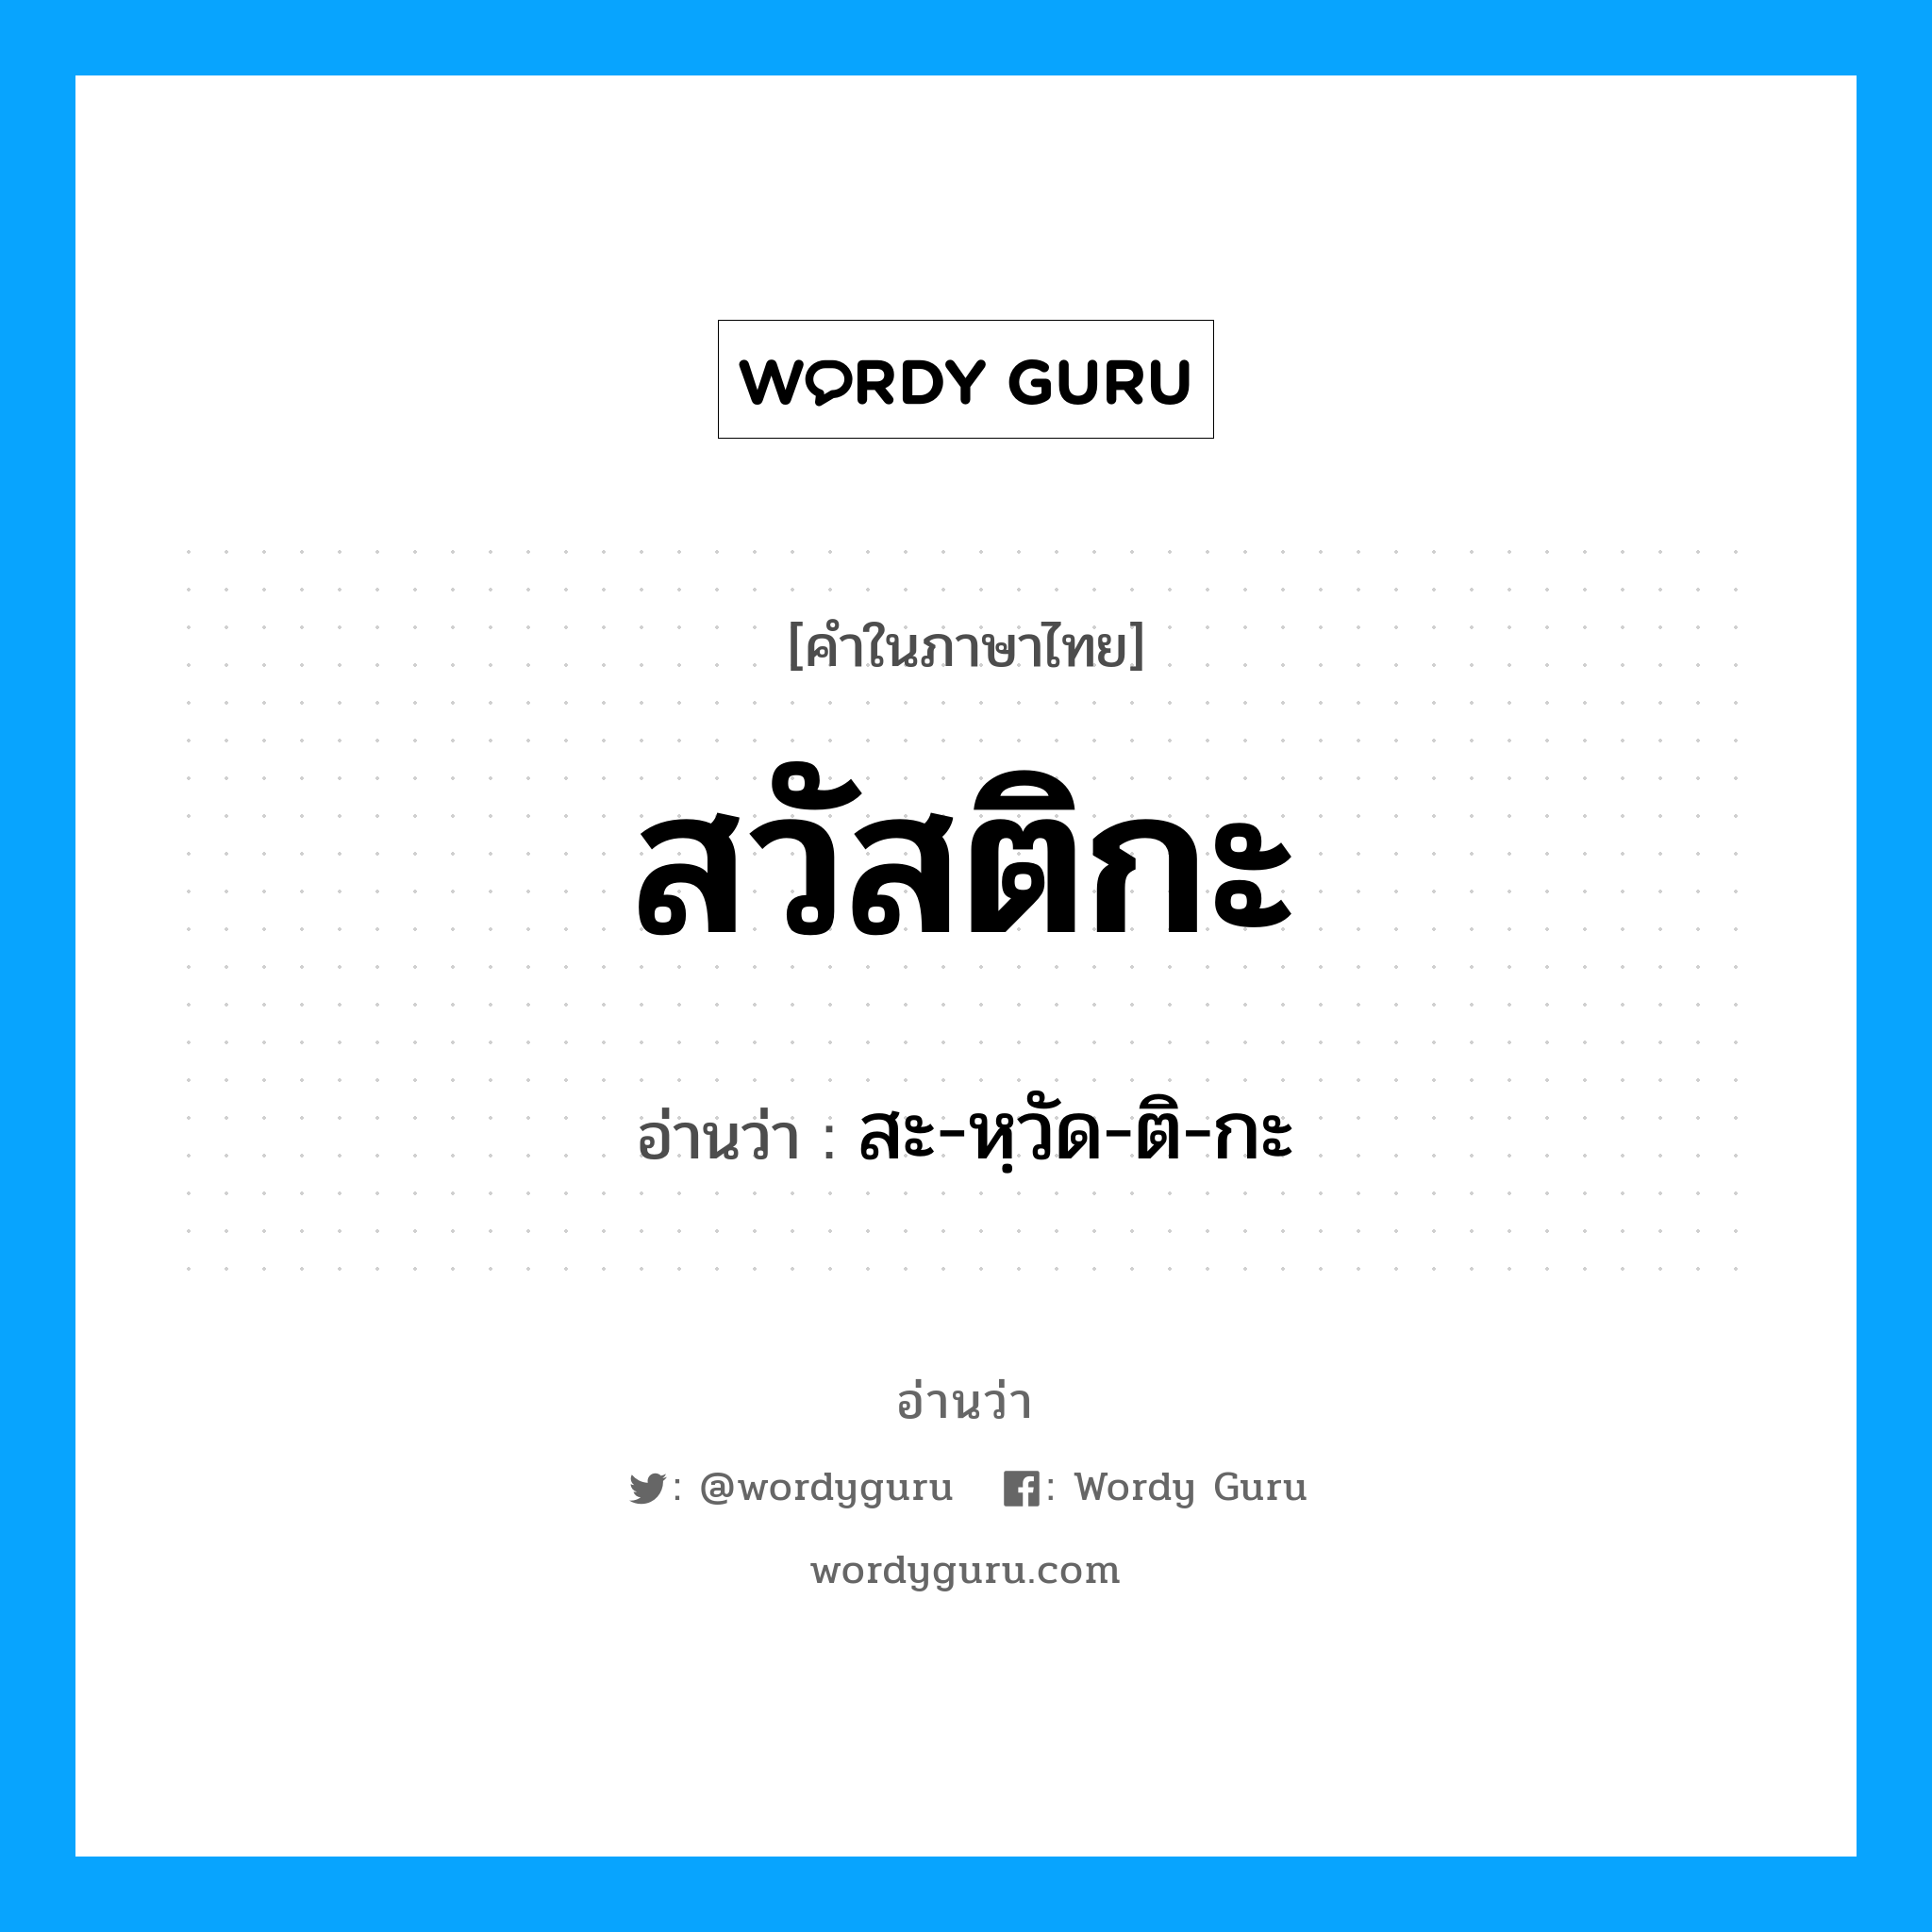 สะ-หฺวัด-ติ-กะ เป็นคำอ่านของคำไหน?, คำในภาษาไทย สะ-หฺวัด-ติ-กะ อ่านว่า สวัสติกะ